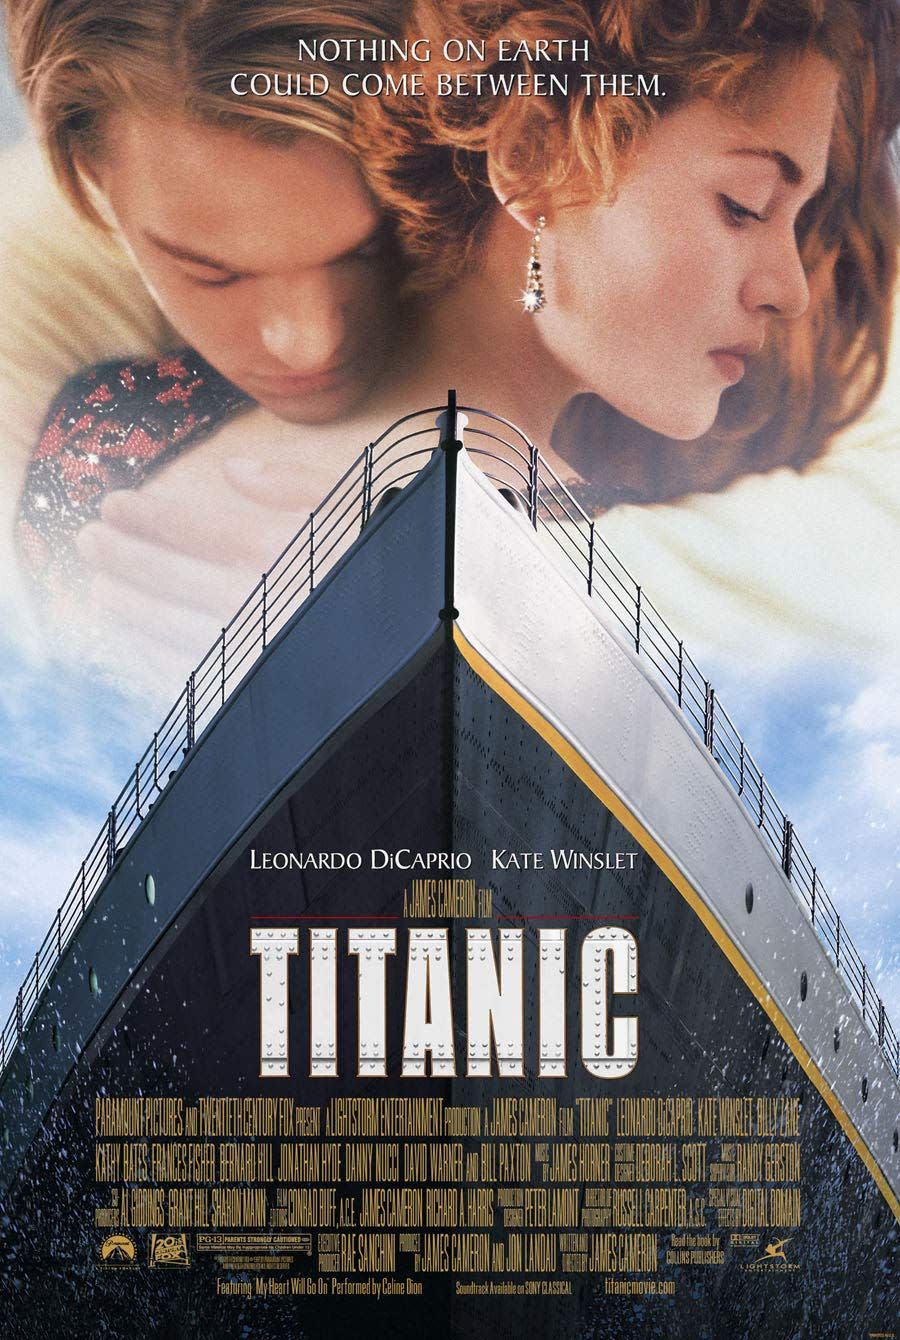 4) Titanic (1997)